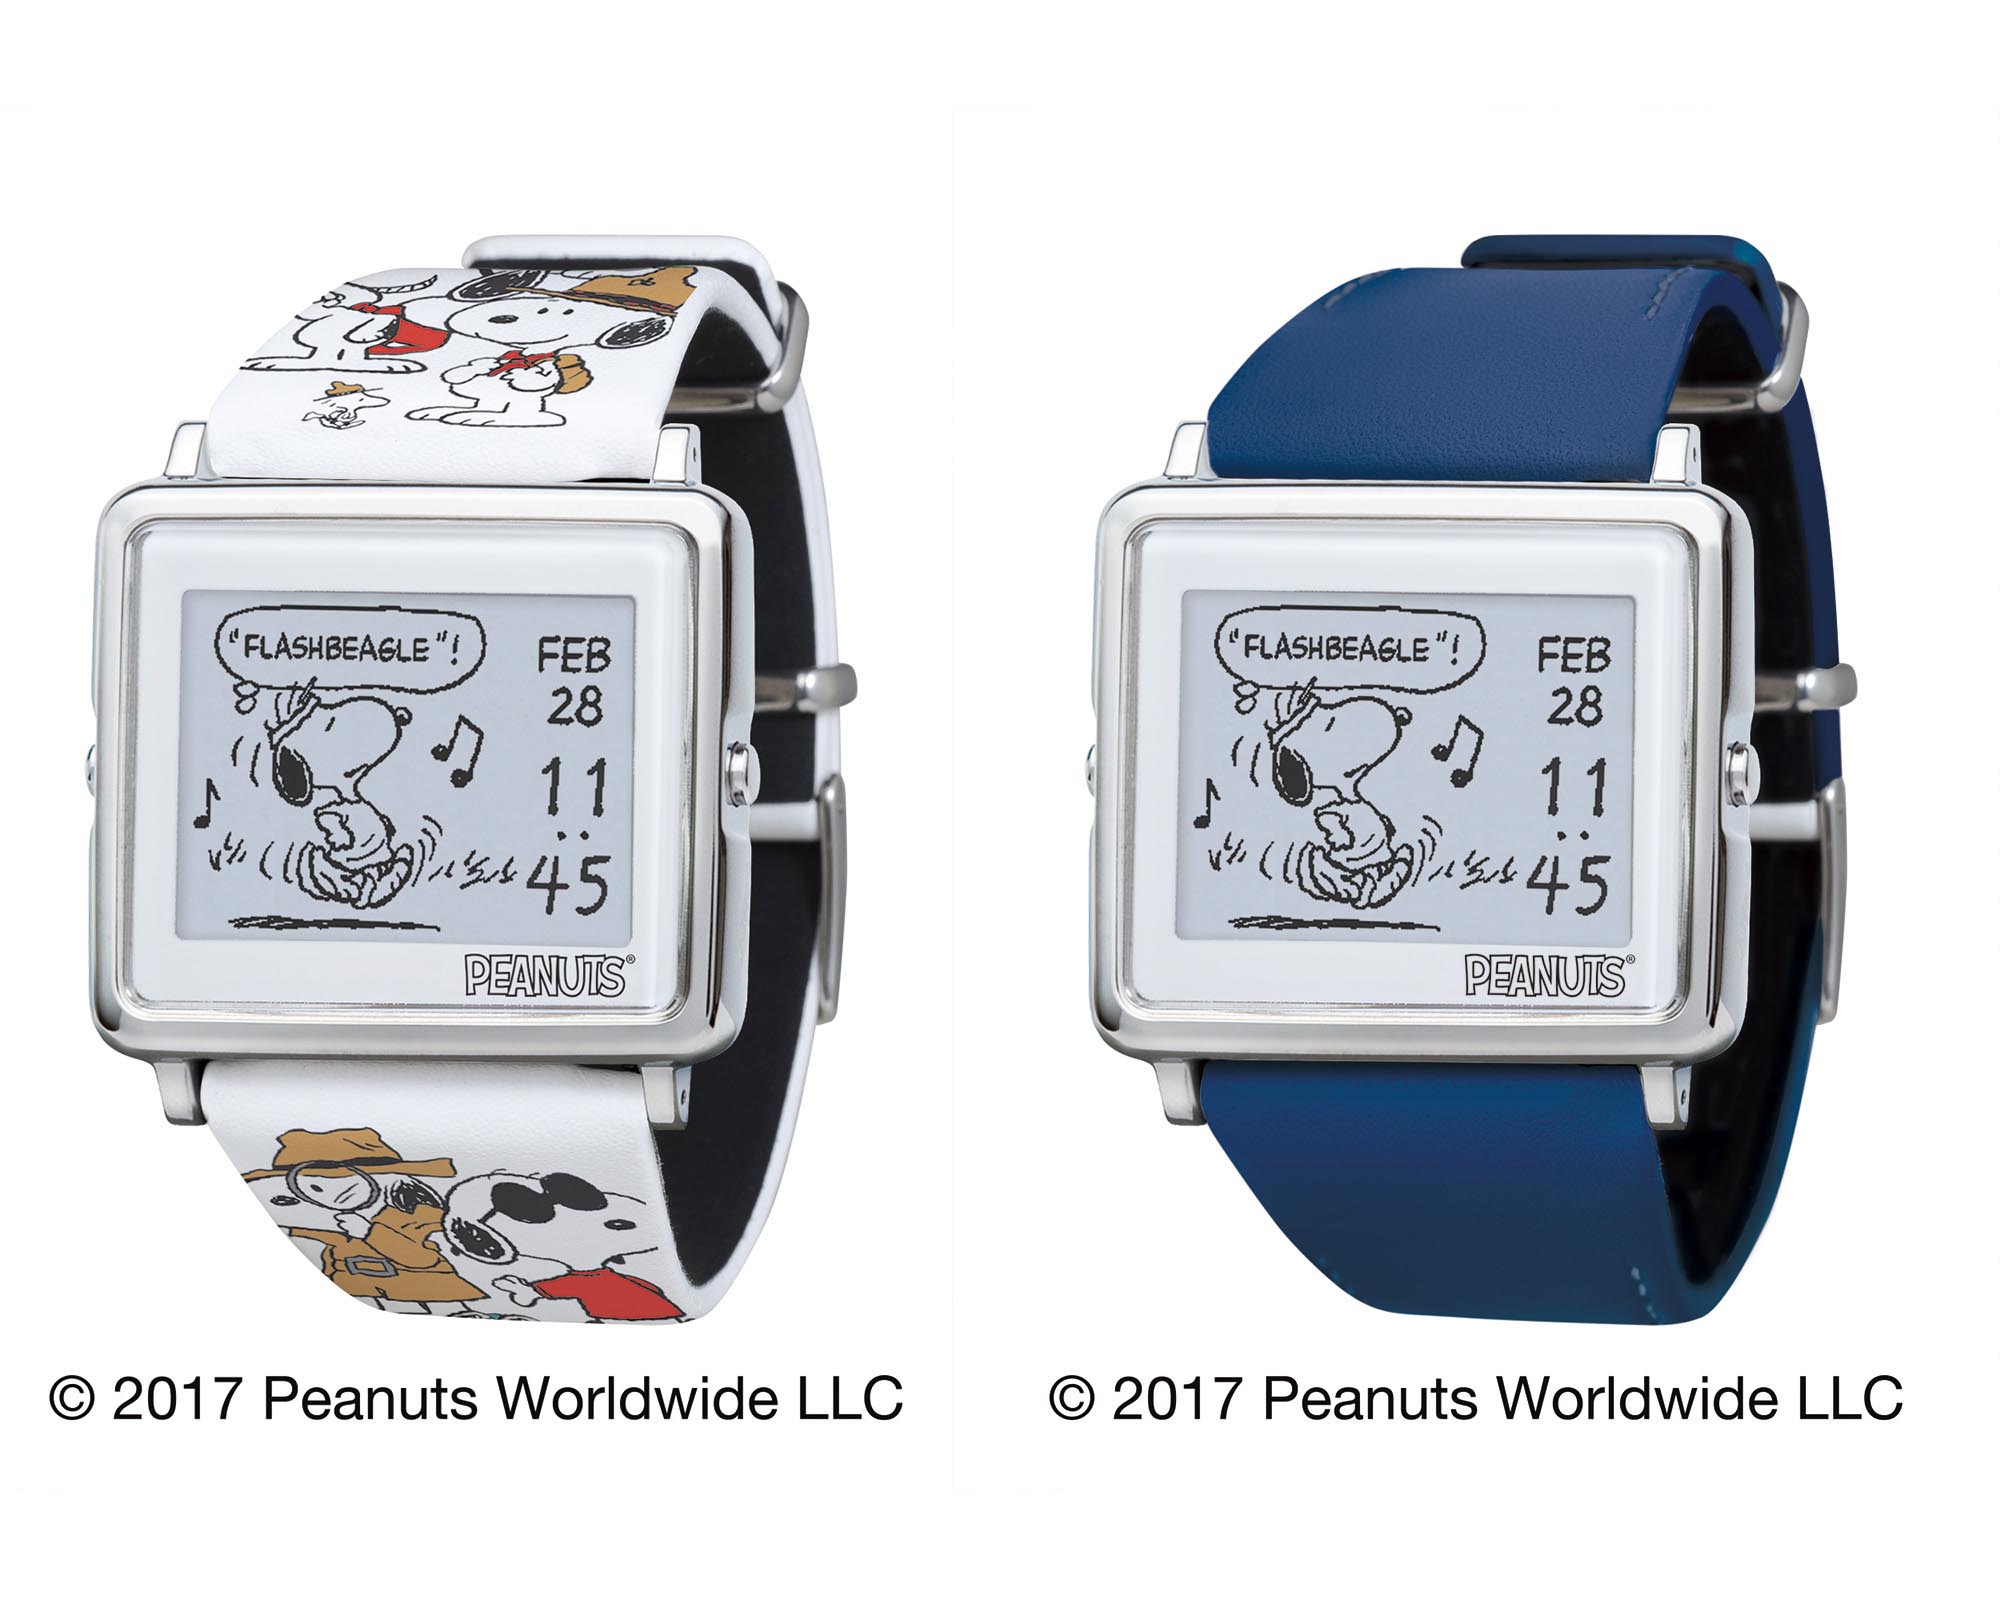 エプソン、電子ペーパー腕時計「Smart Canvas」に“スヌーピー”柄モデルを追加 - ITmedia PC USER